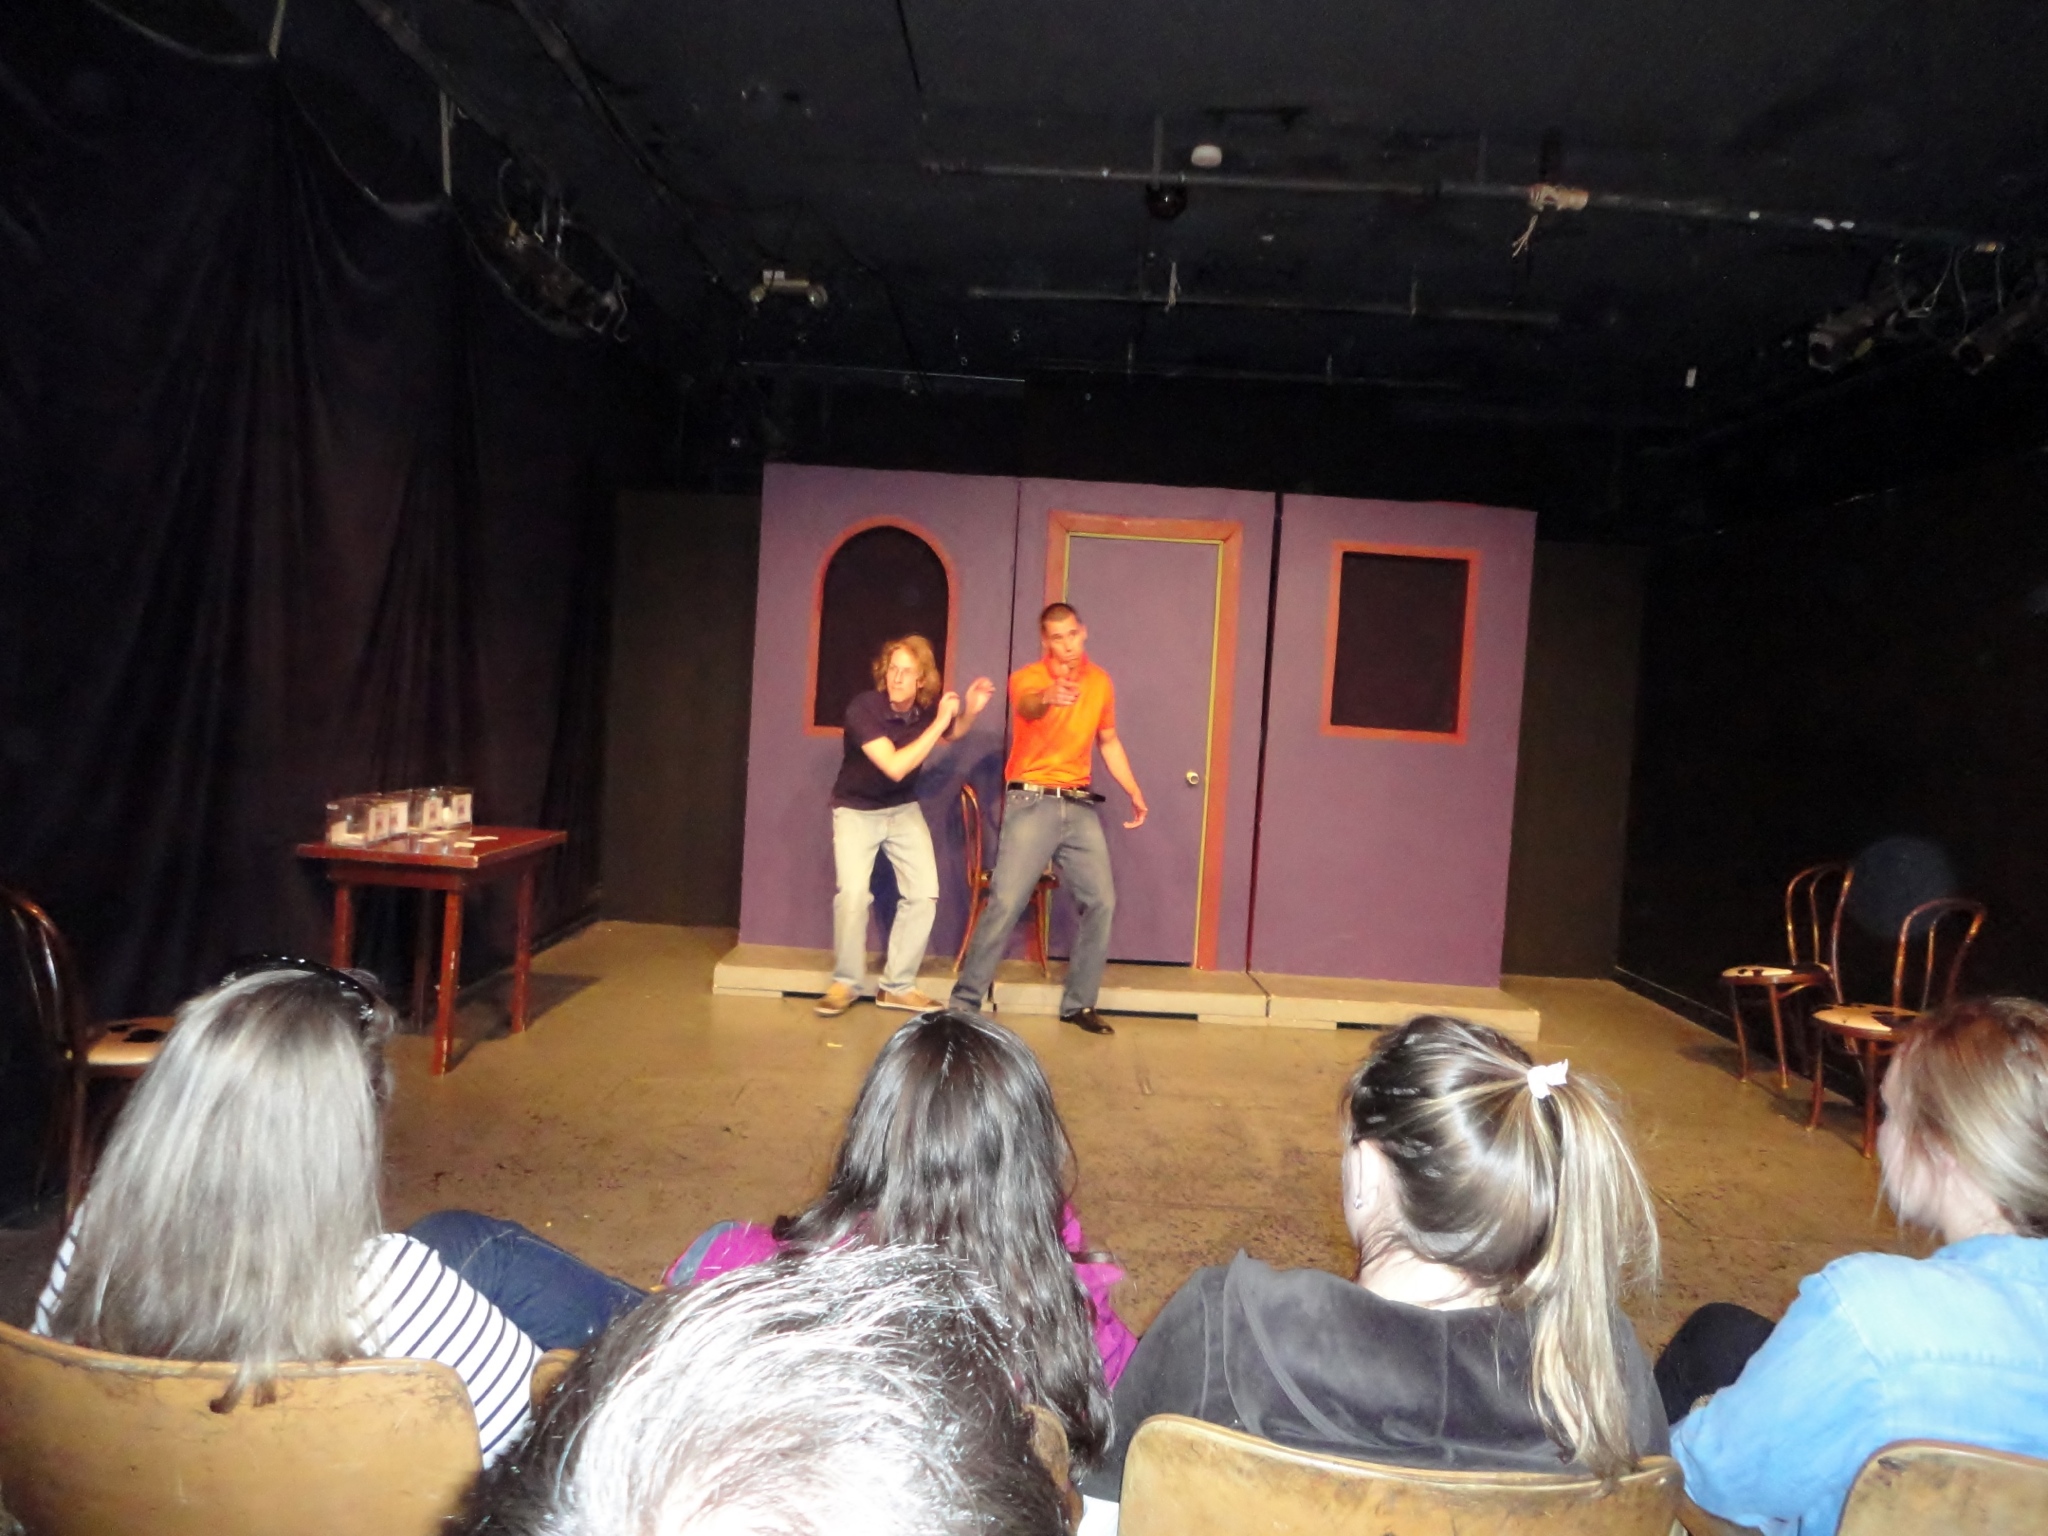 Bovine Metropolis Theater - 'The Adventurers' Improv Comedy Show